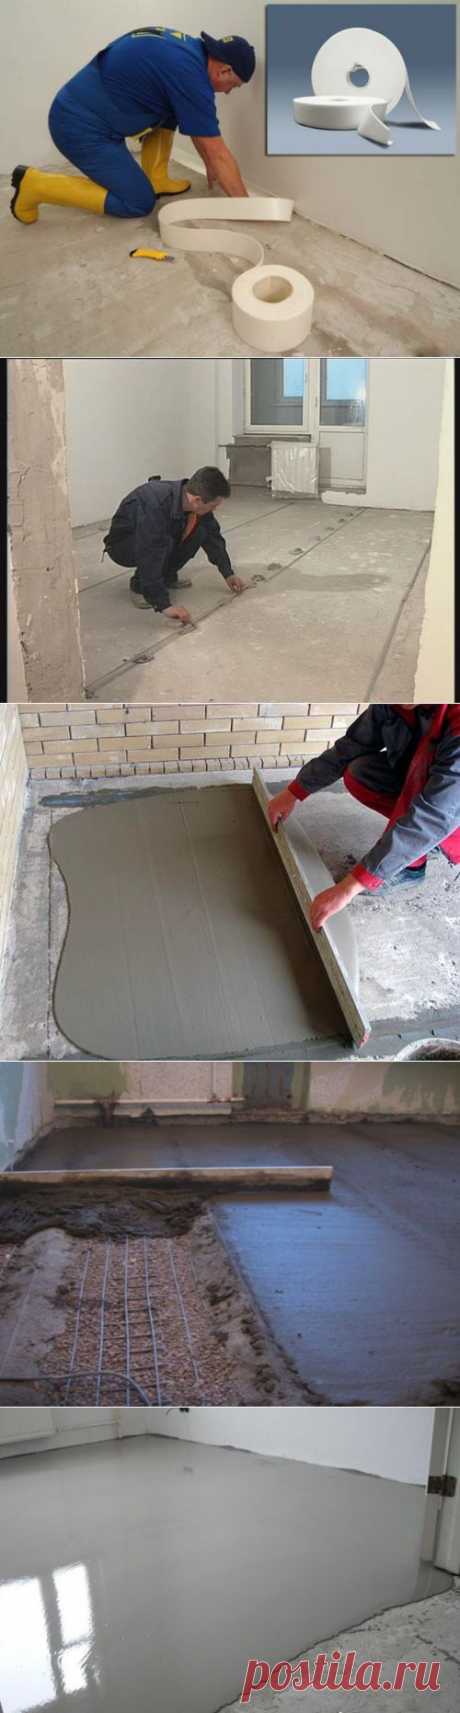 Цементная стяжка для пола | Ремонт квартиры своими руками